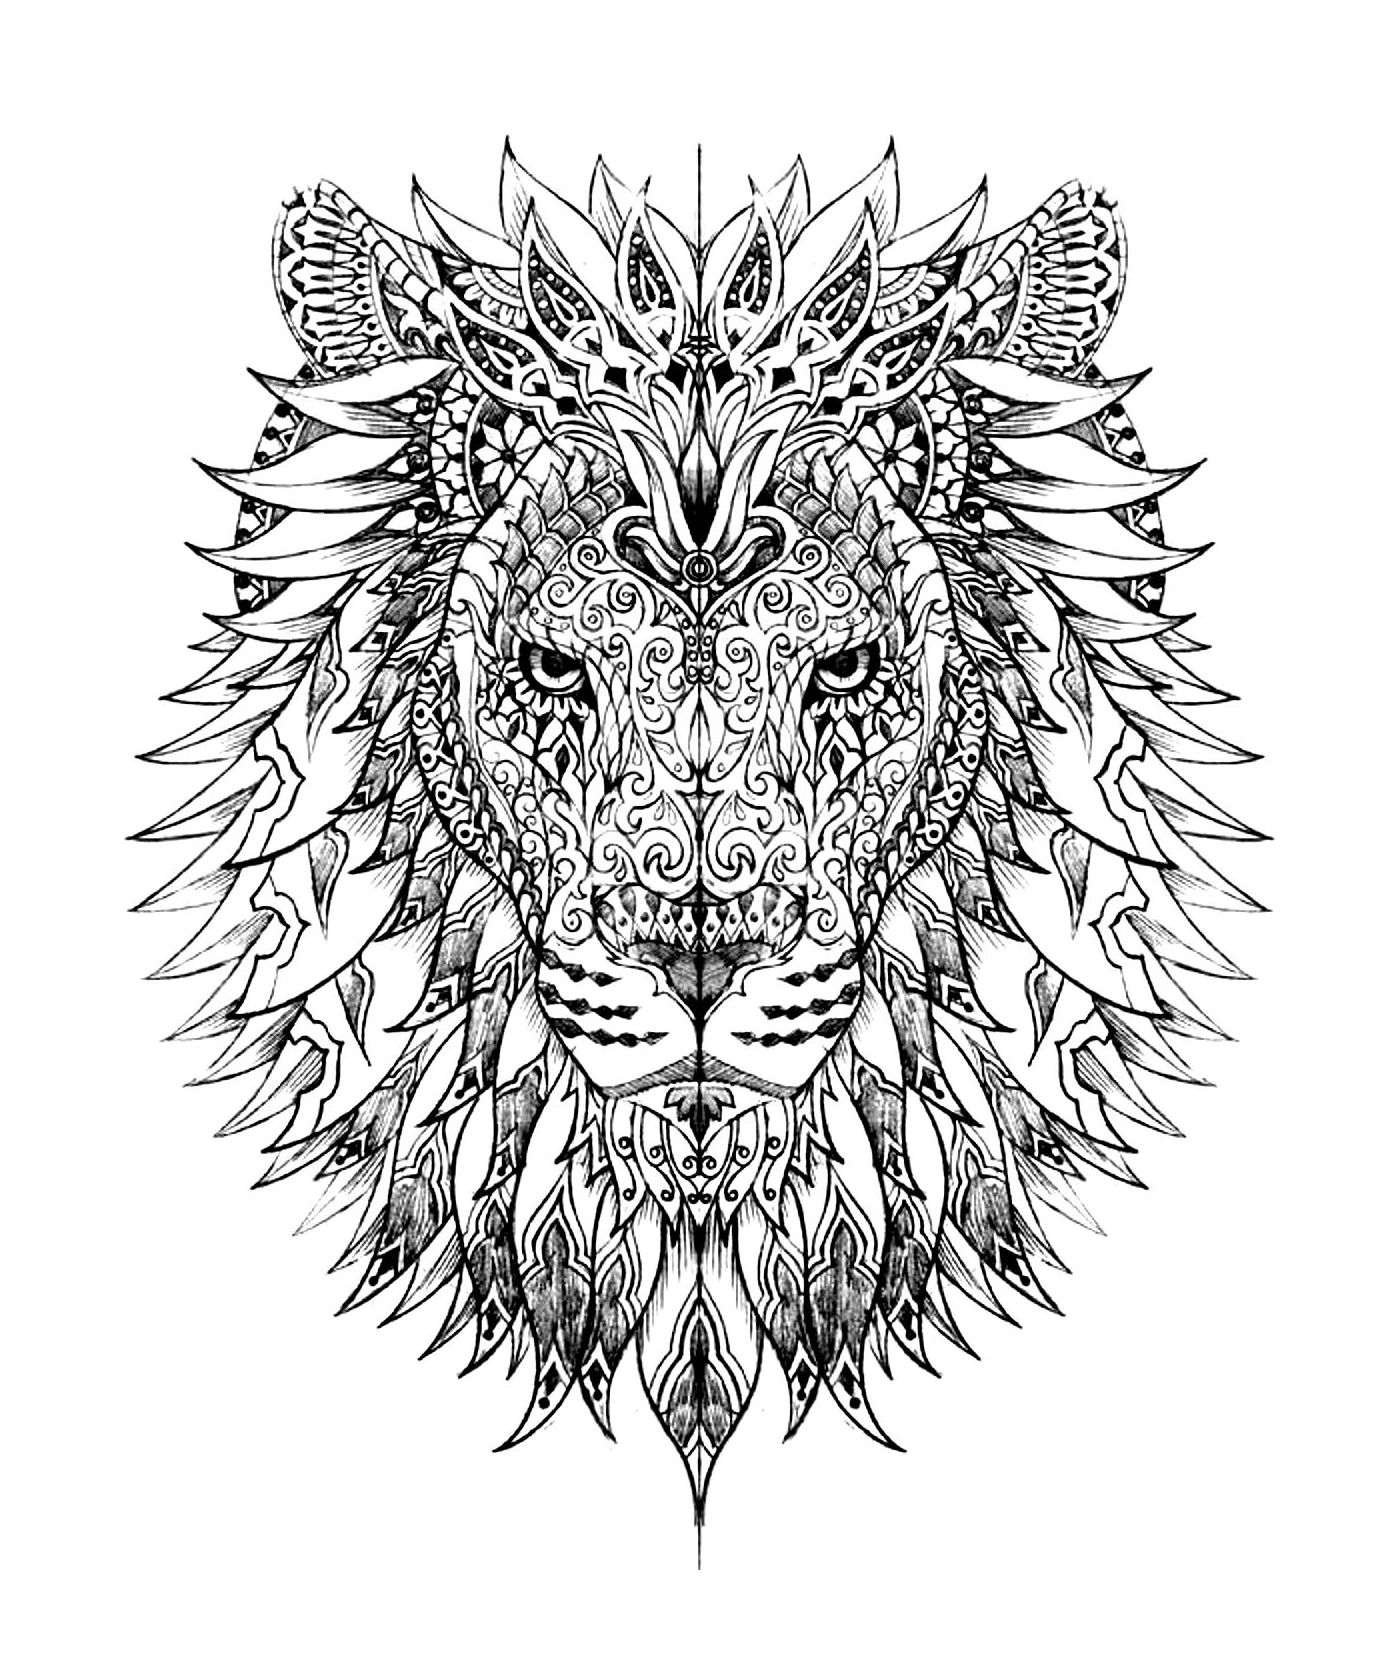   La tête d'un lion complexe 